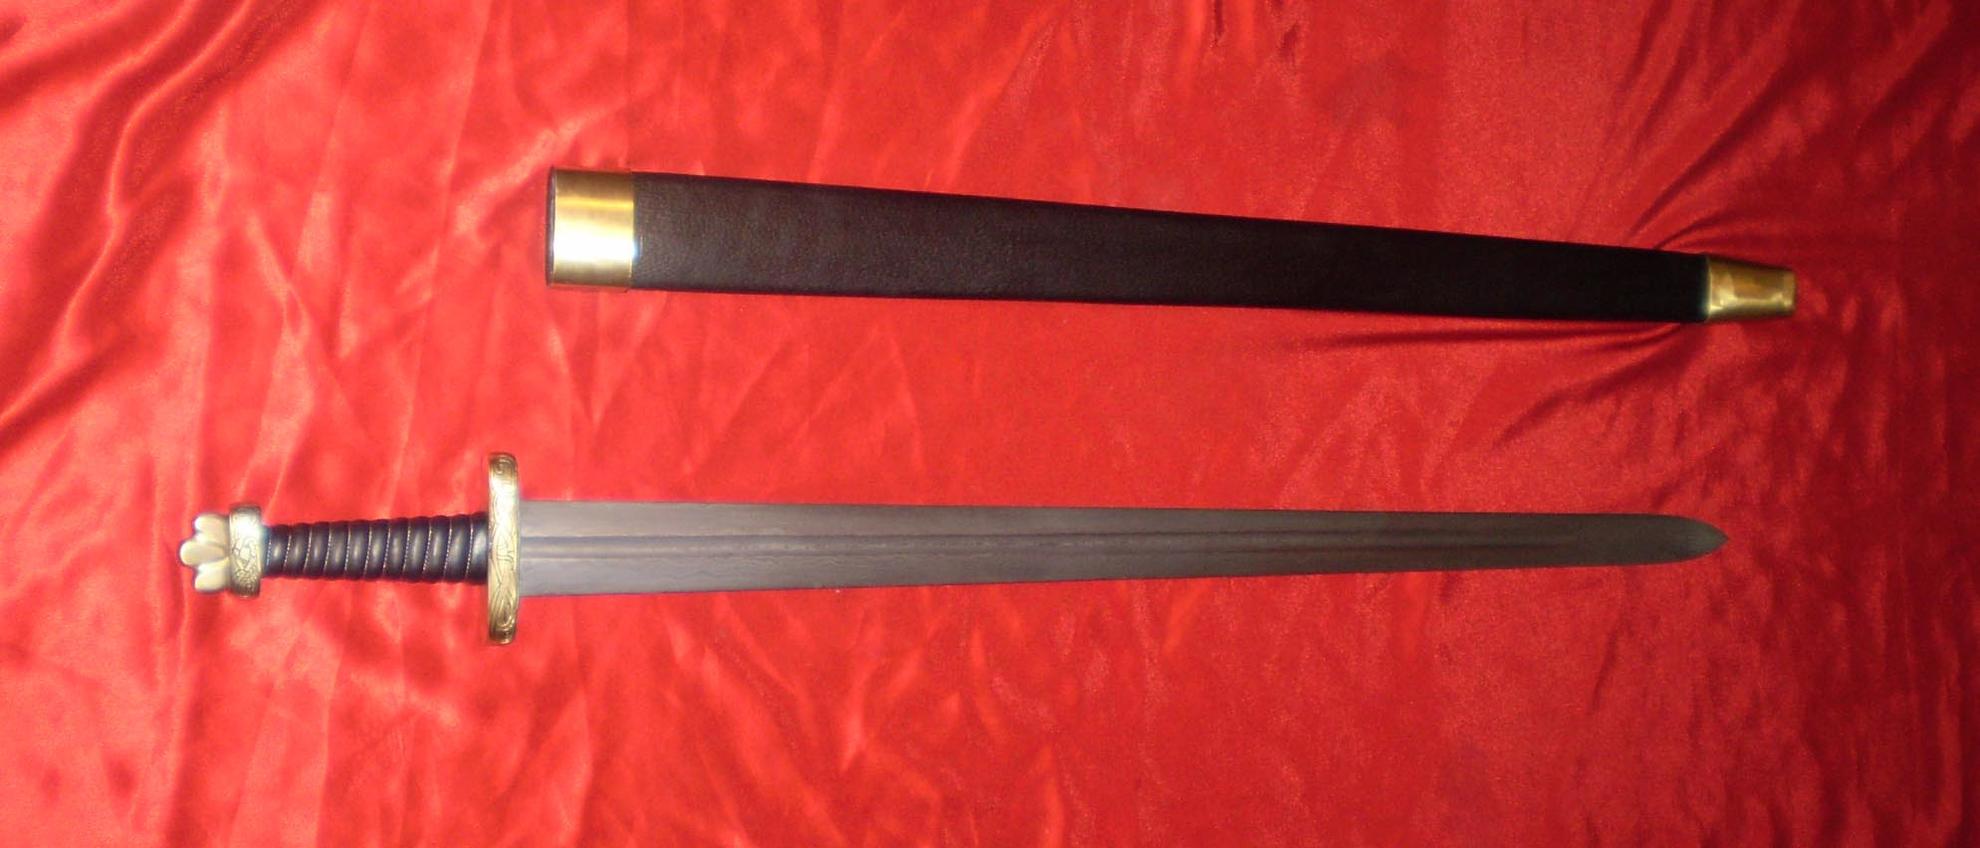 Русские мечи 13 века меч Александра Невского